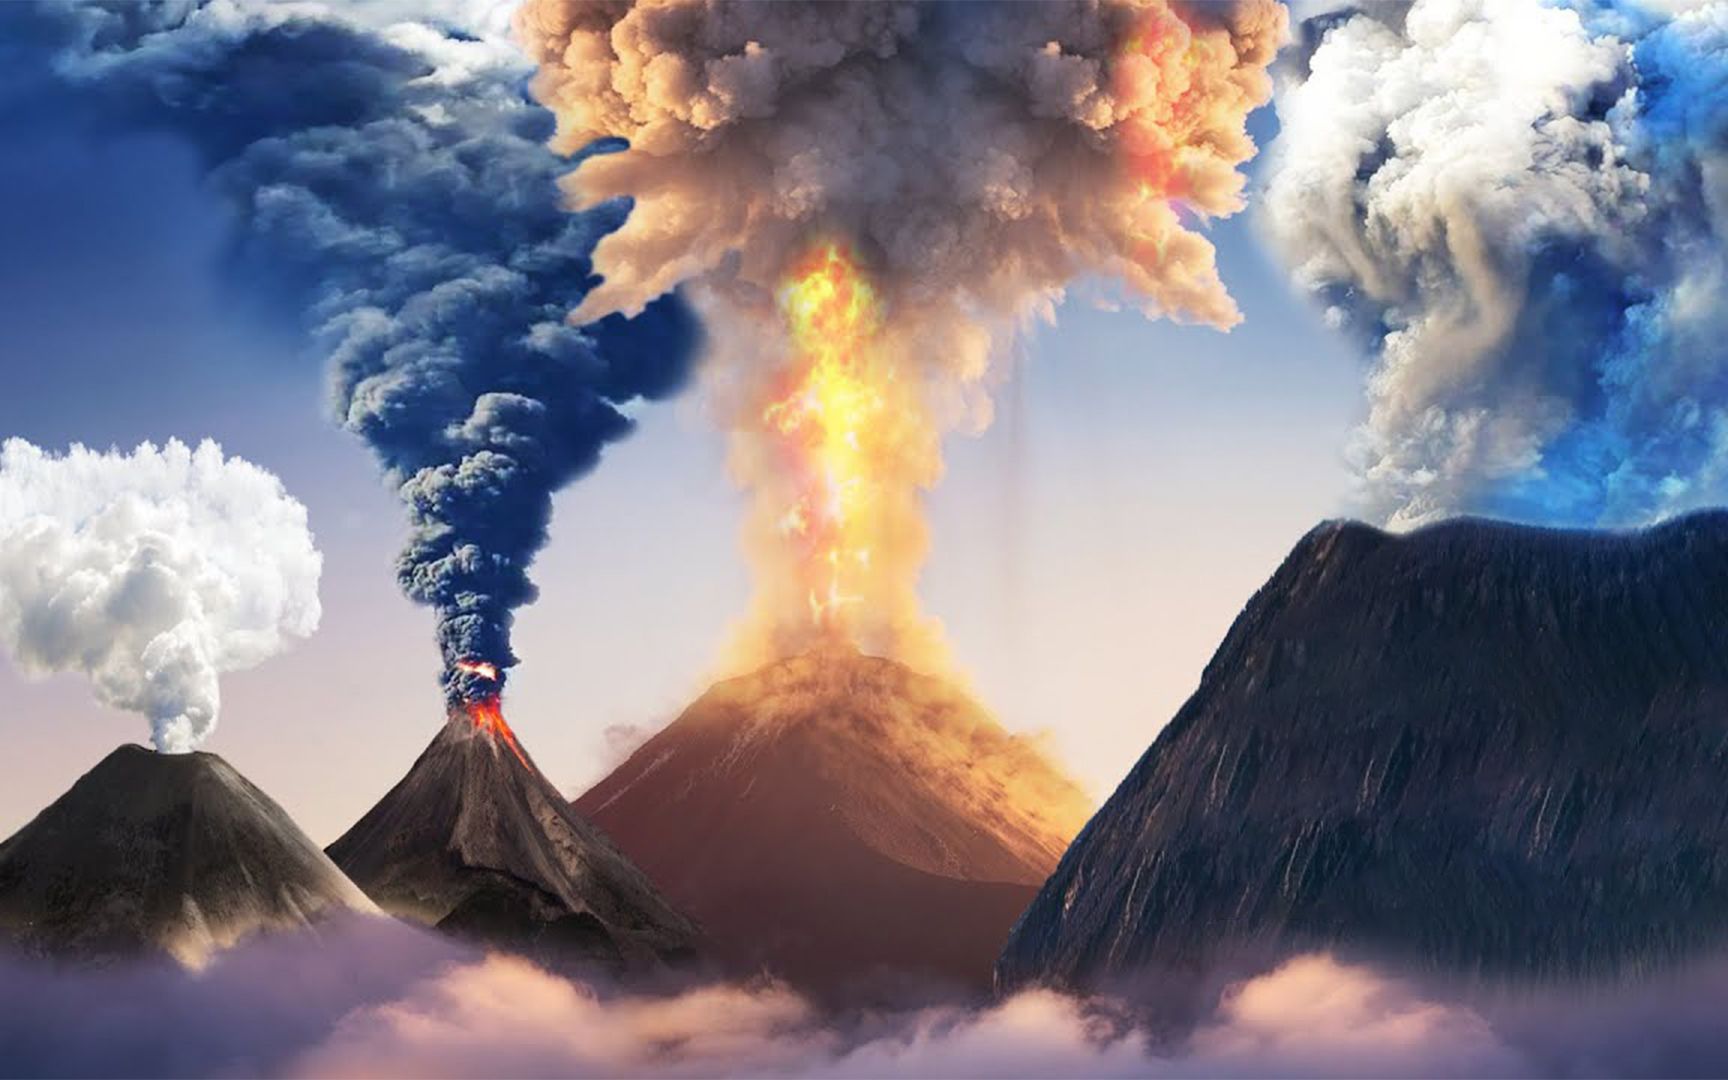 有史以来最具毁灭性的火山喷发是哪次多项数据做个直观对比